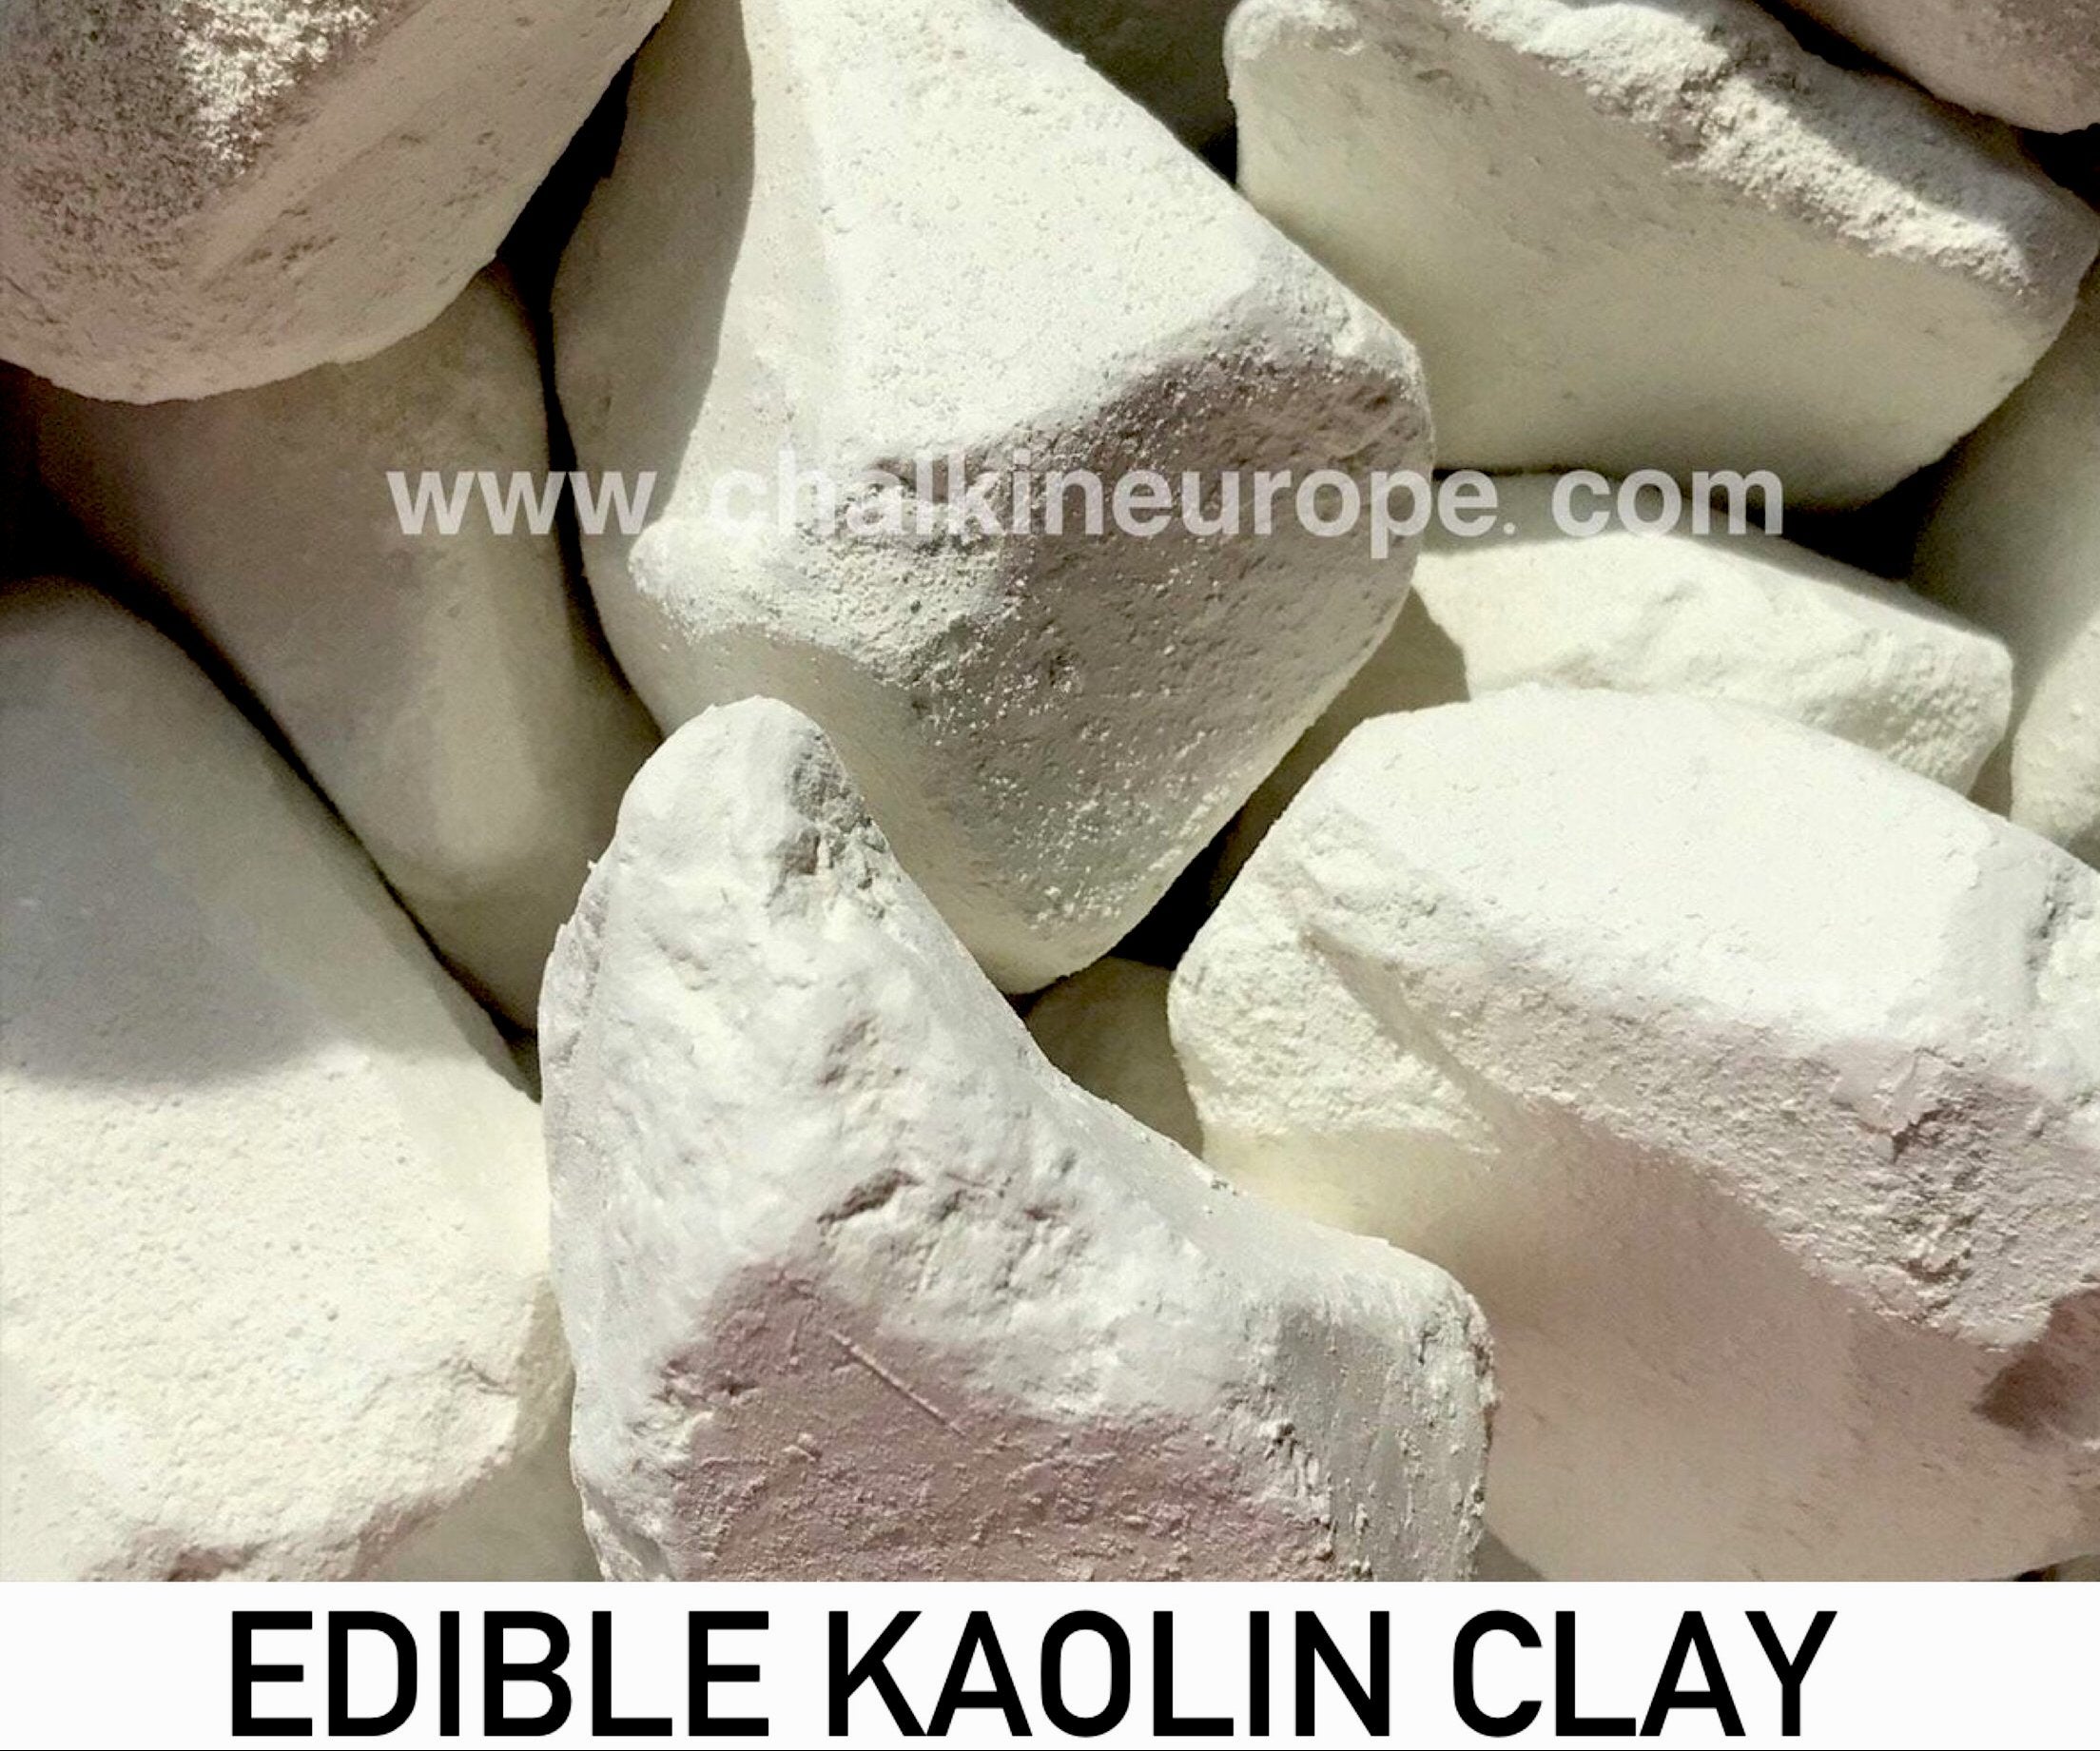 Jadalna glinka kaolinowa - Chalkineurope